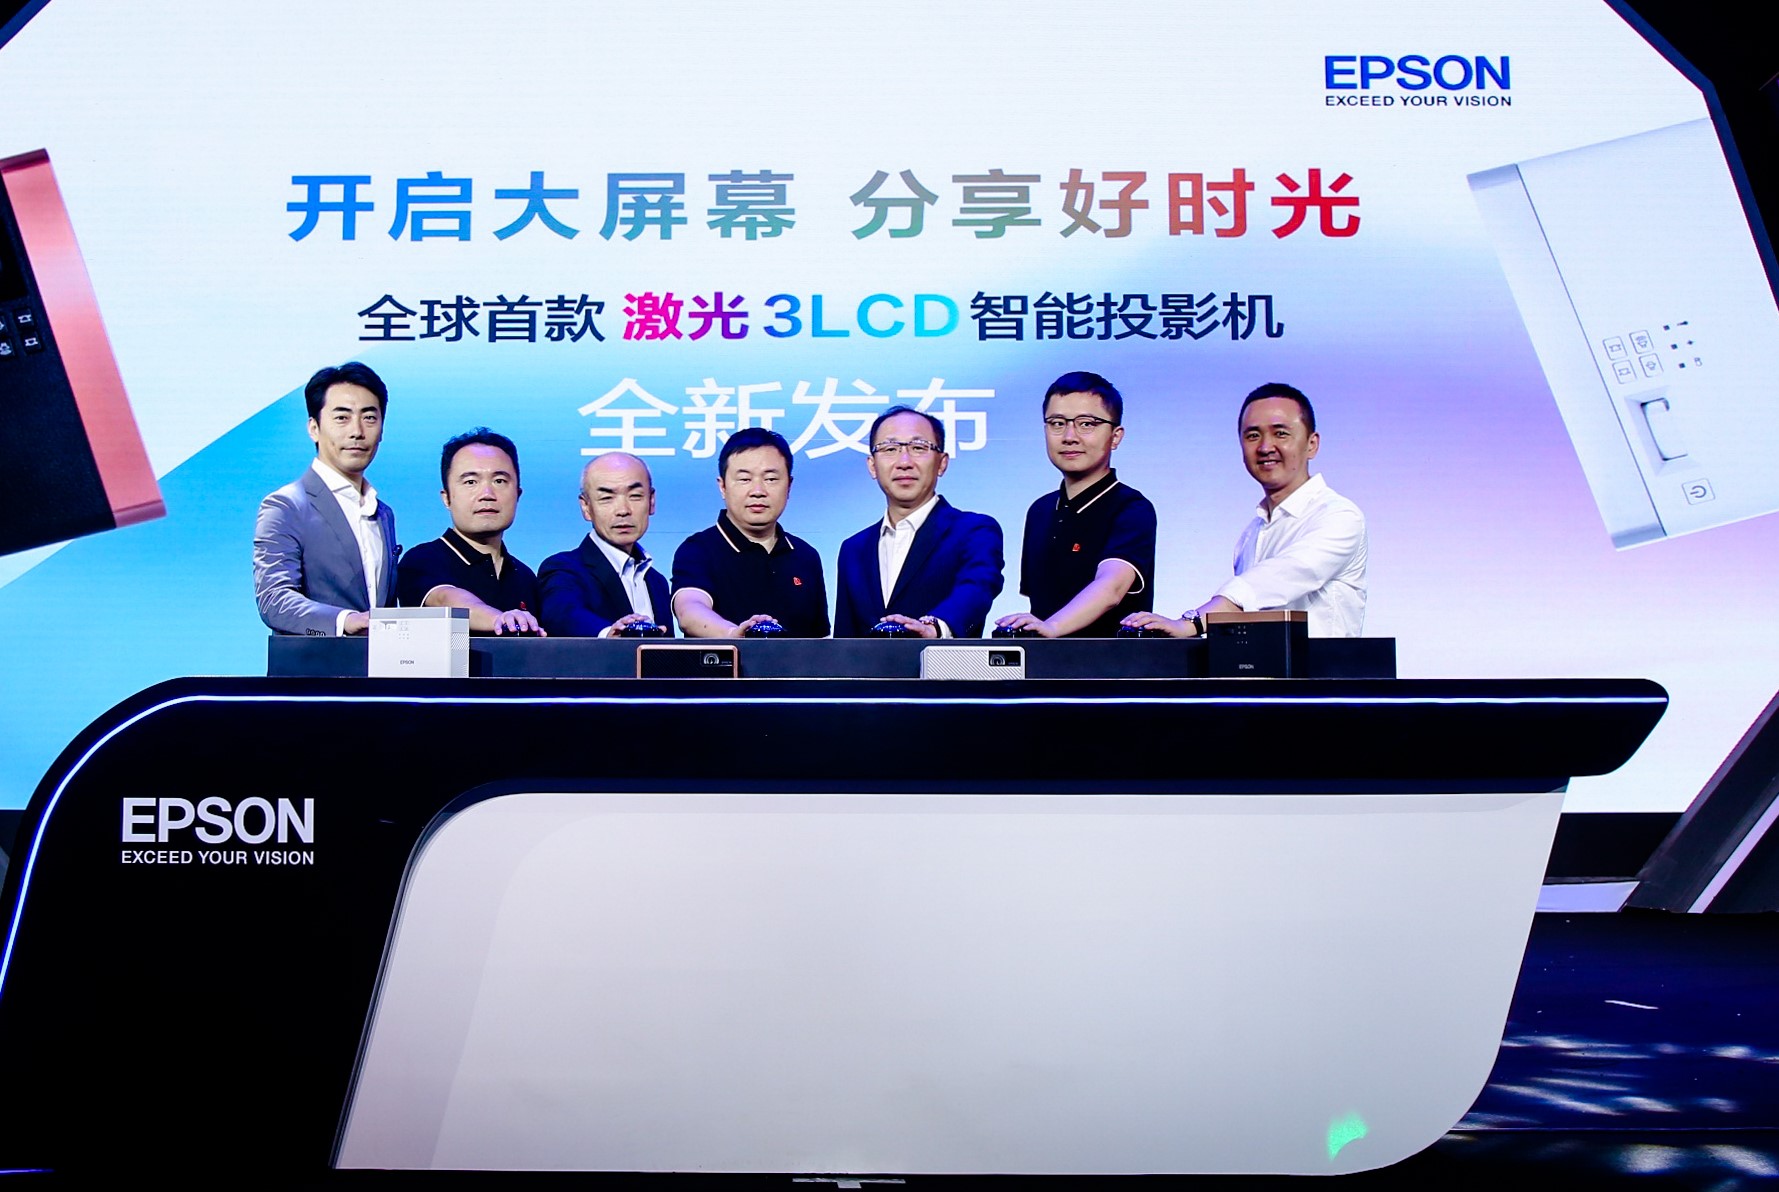 爱普生发布全球首款激光3LCD智能投影机 定价5999元！-视听圈